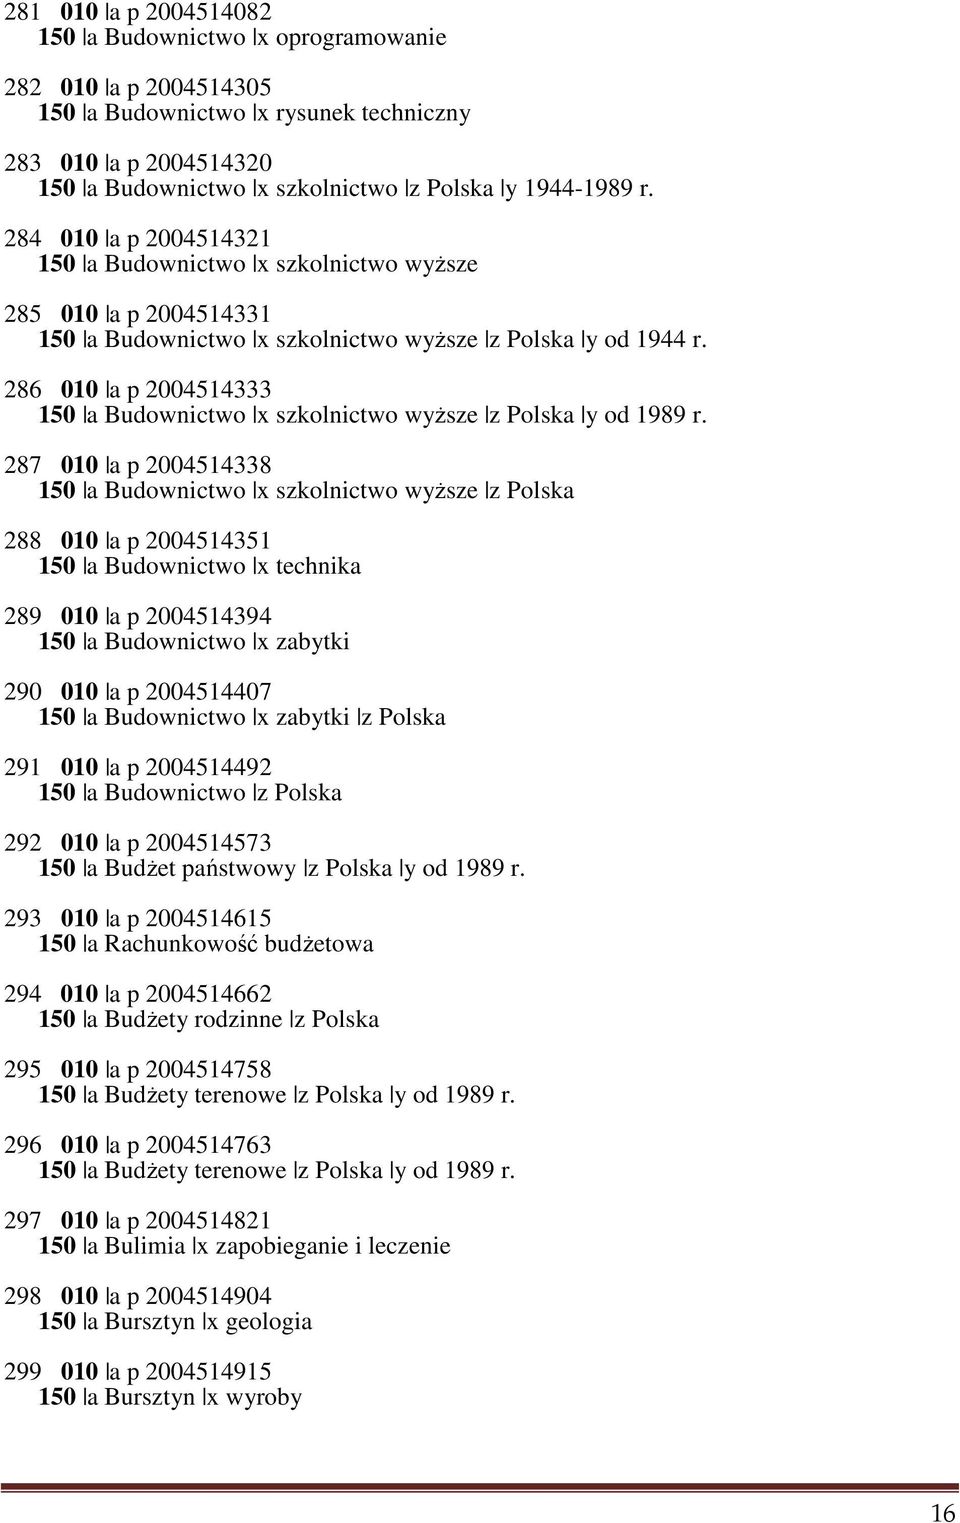 286 010 a p 2004514333 150 a Budownictwo x szkolnictwo wyższe z Polska y od 1989 r.